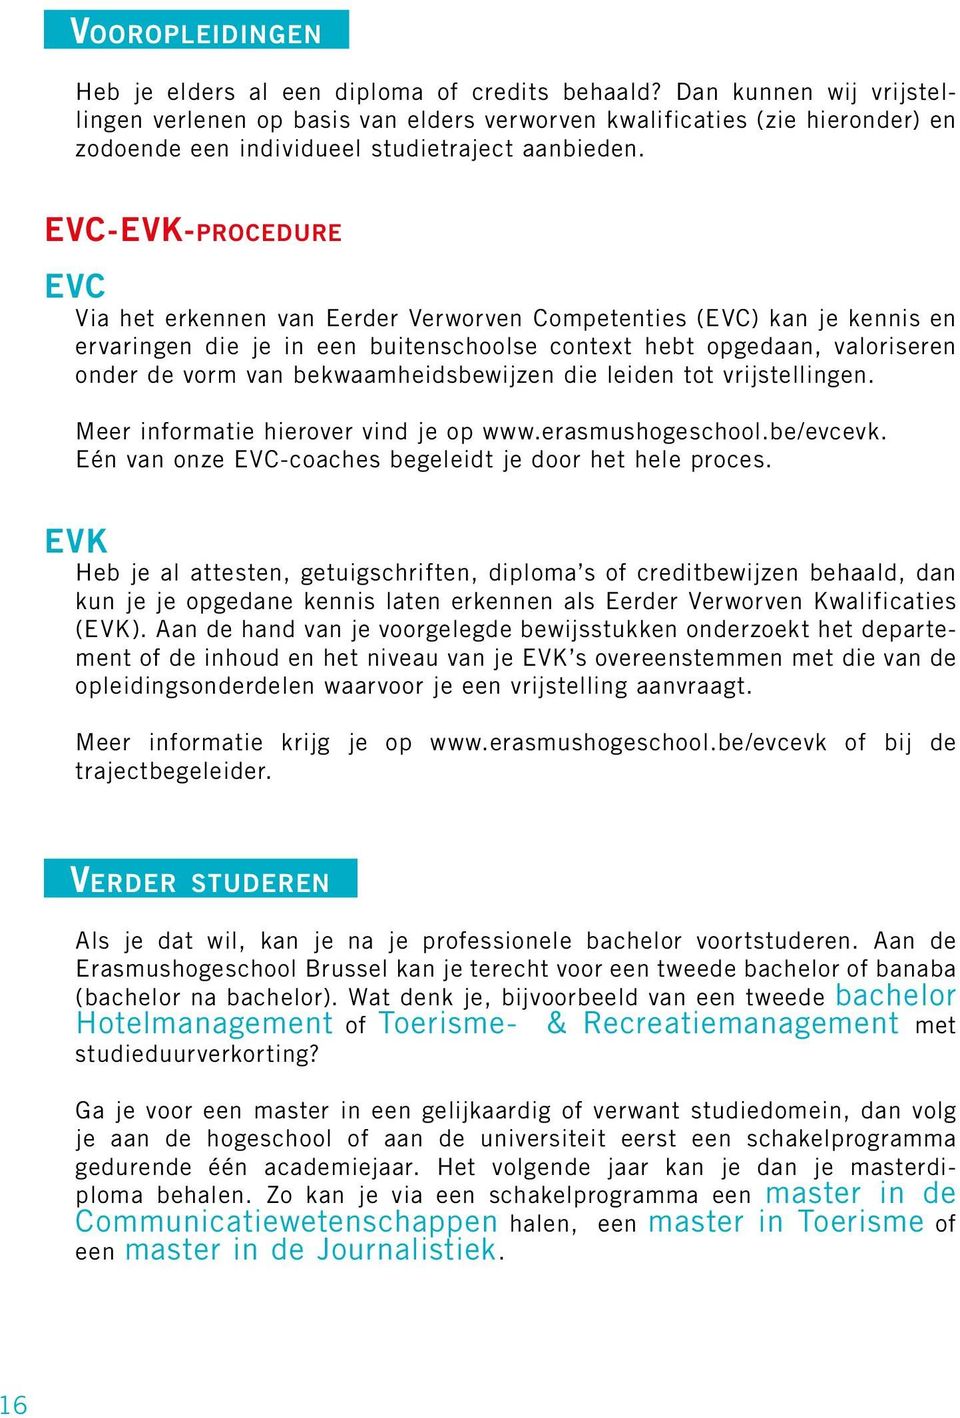 EVC-EVK-procedure EVC Via het erkennen van Eerder Verworven Competenties (EVC) kan je kennis en ervaringen die je in een buitenschoolse context hebt opgedaan, valoriseren onder de vorm van